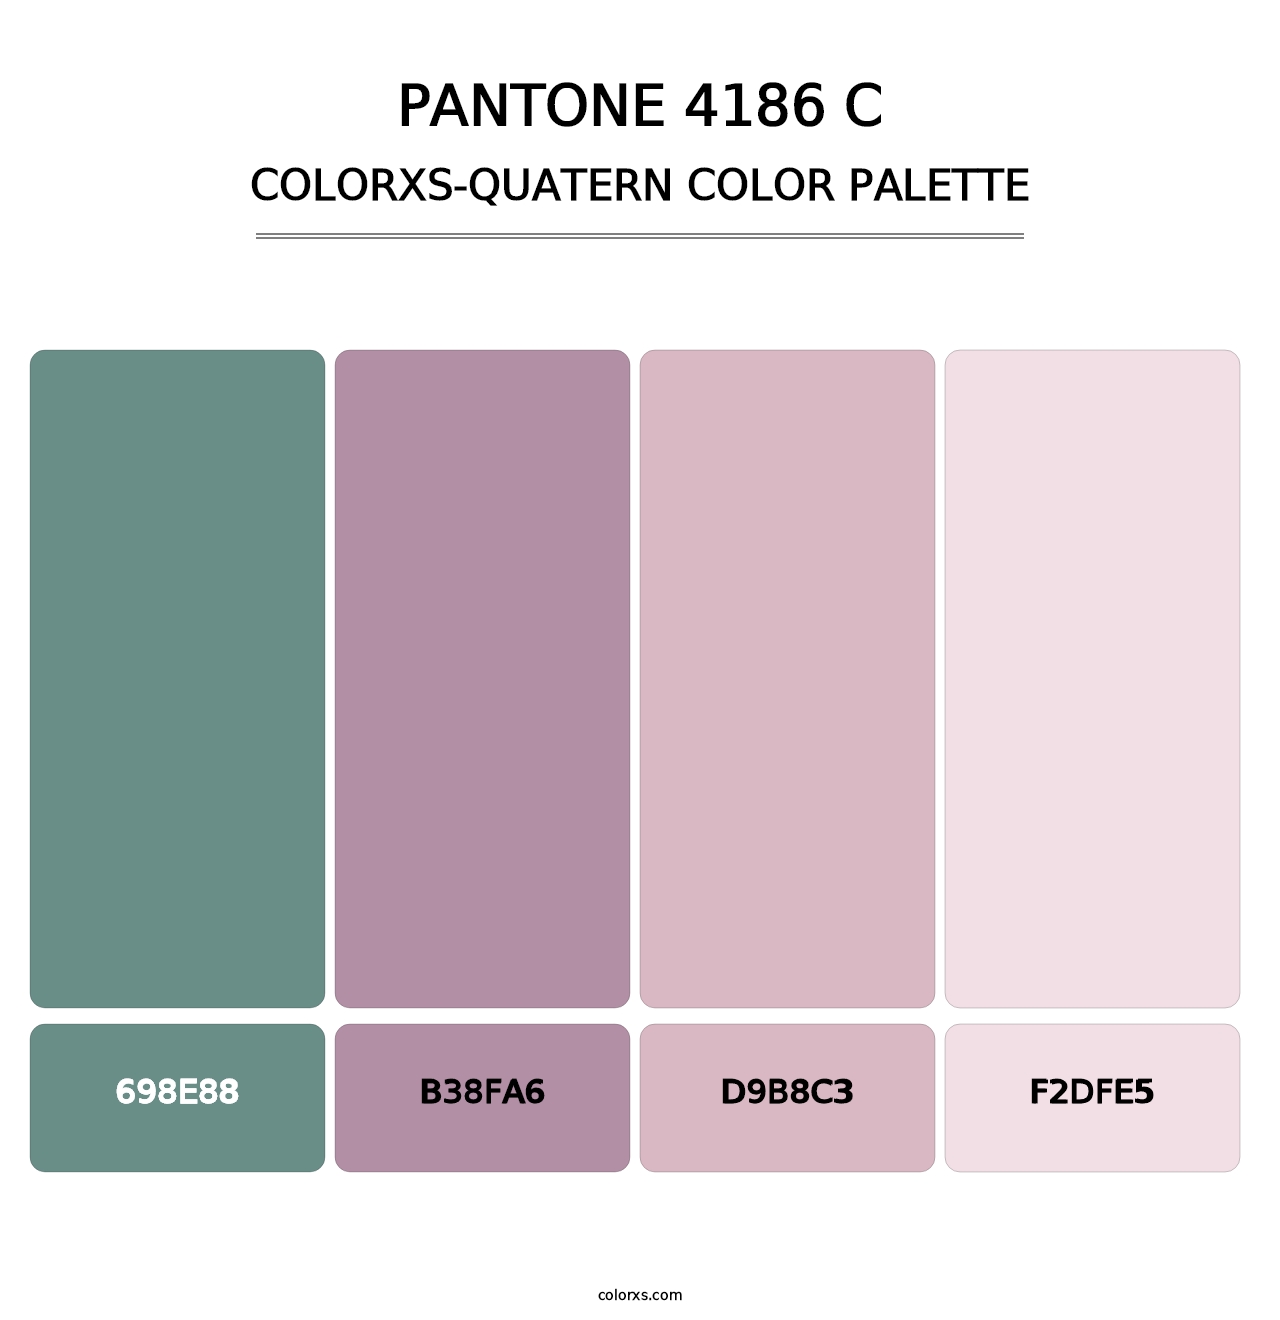 PANTONE 4186 C - Colorxs Quatern Palette